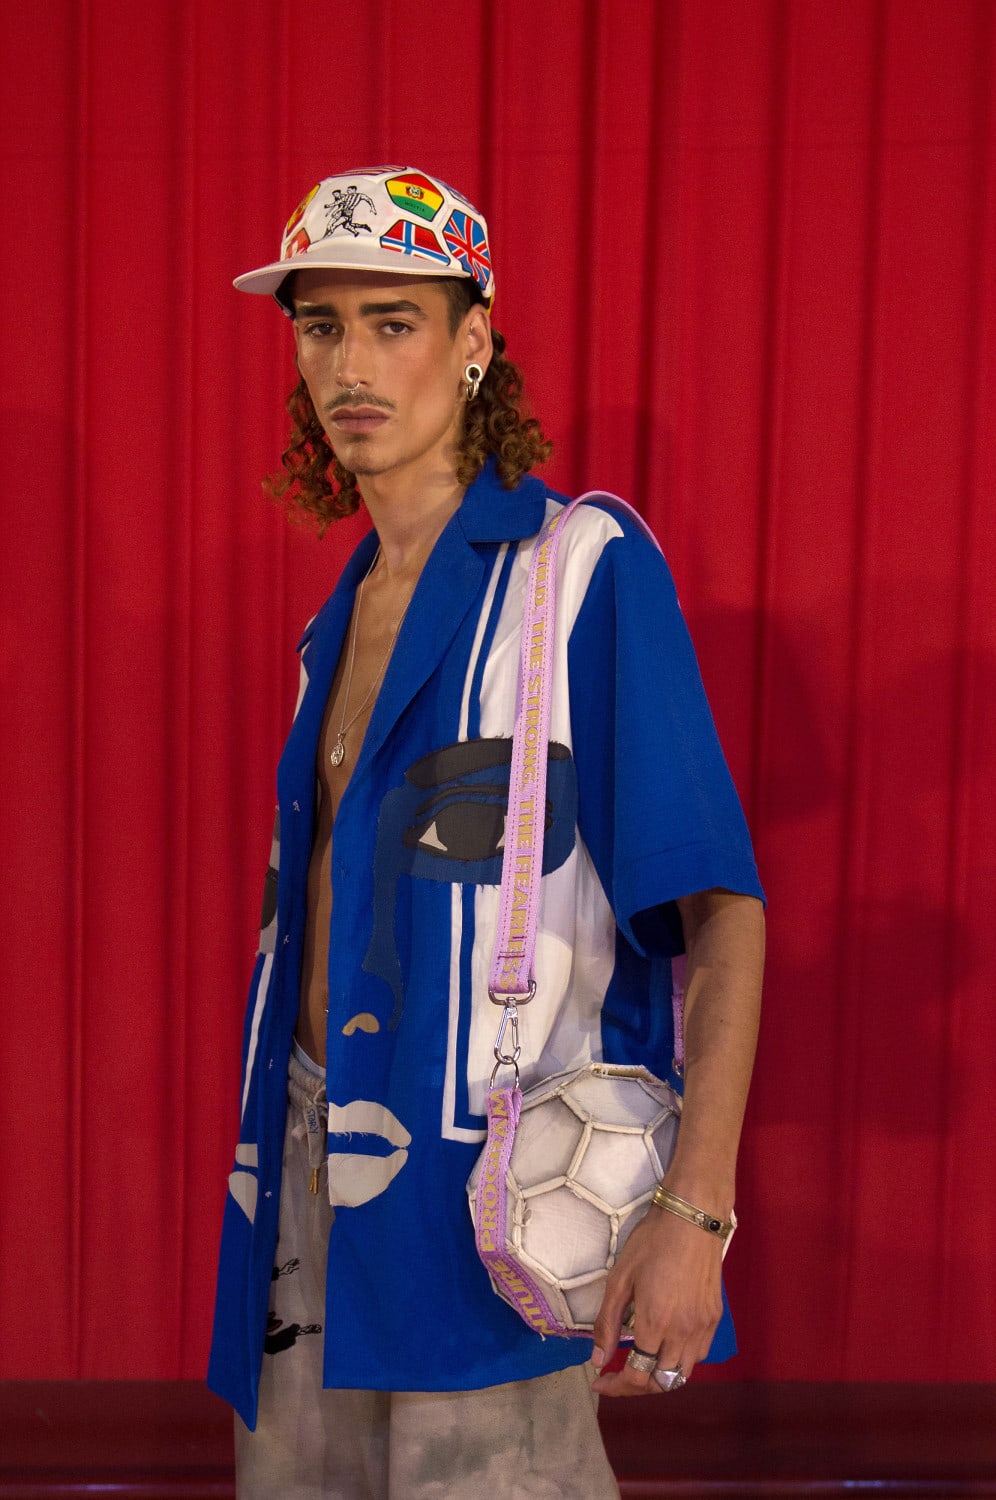 Soccer AM on X: Has Hector Bellerin's fashion improved since  #LondonFashionWeekMens last year?  / X